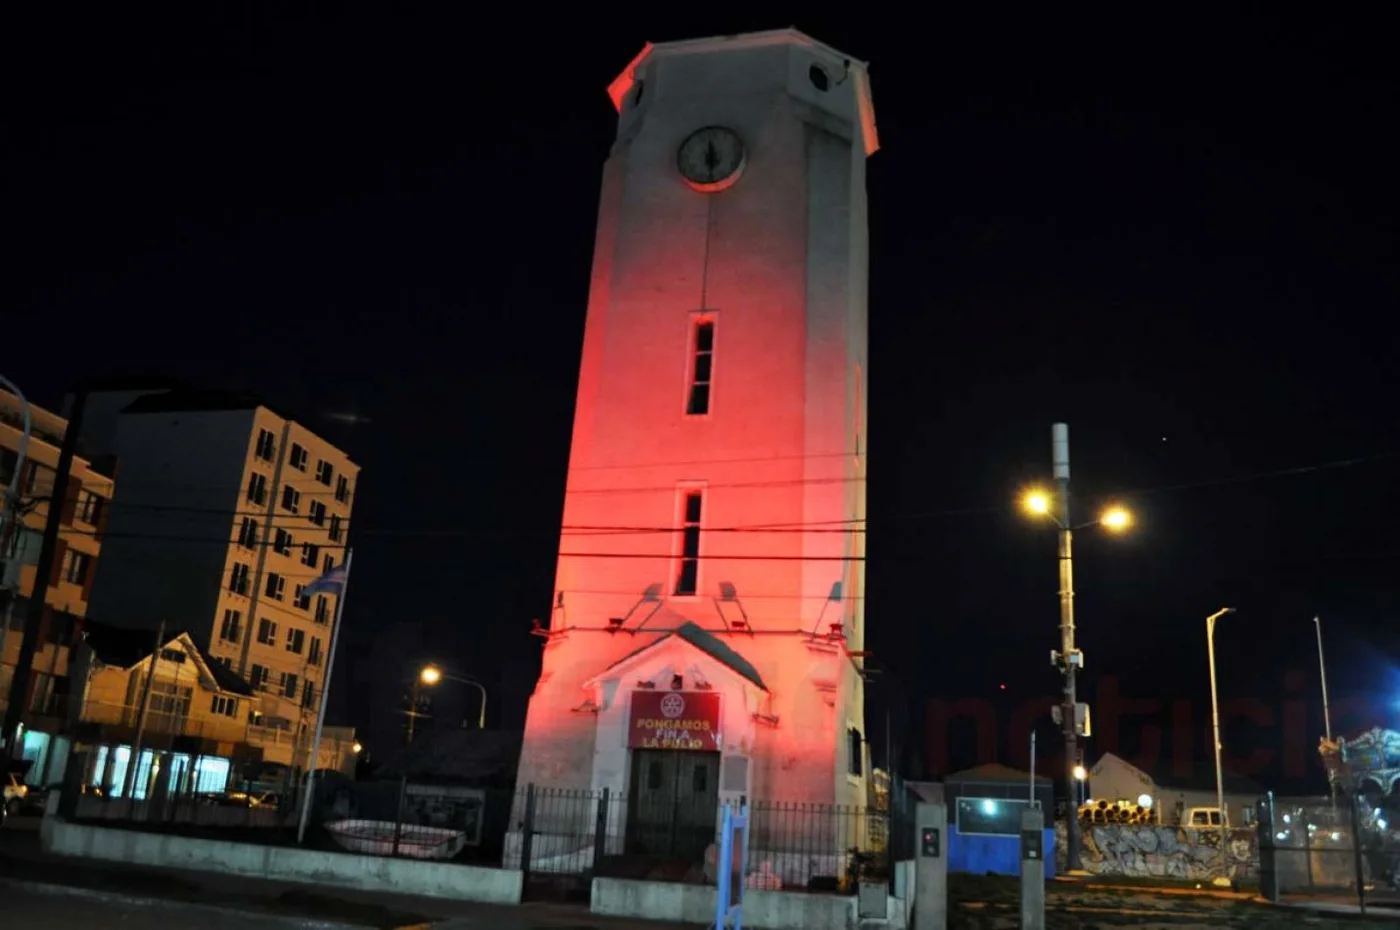 Por 24 horas, la torre de agua permanecerá iluminada para conmemorar la lucha contra la polio.